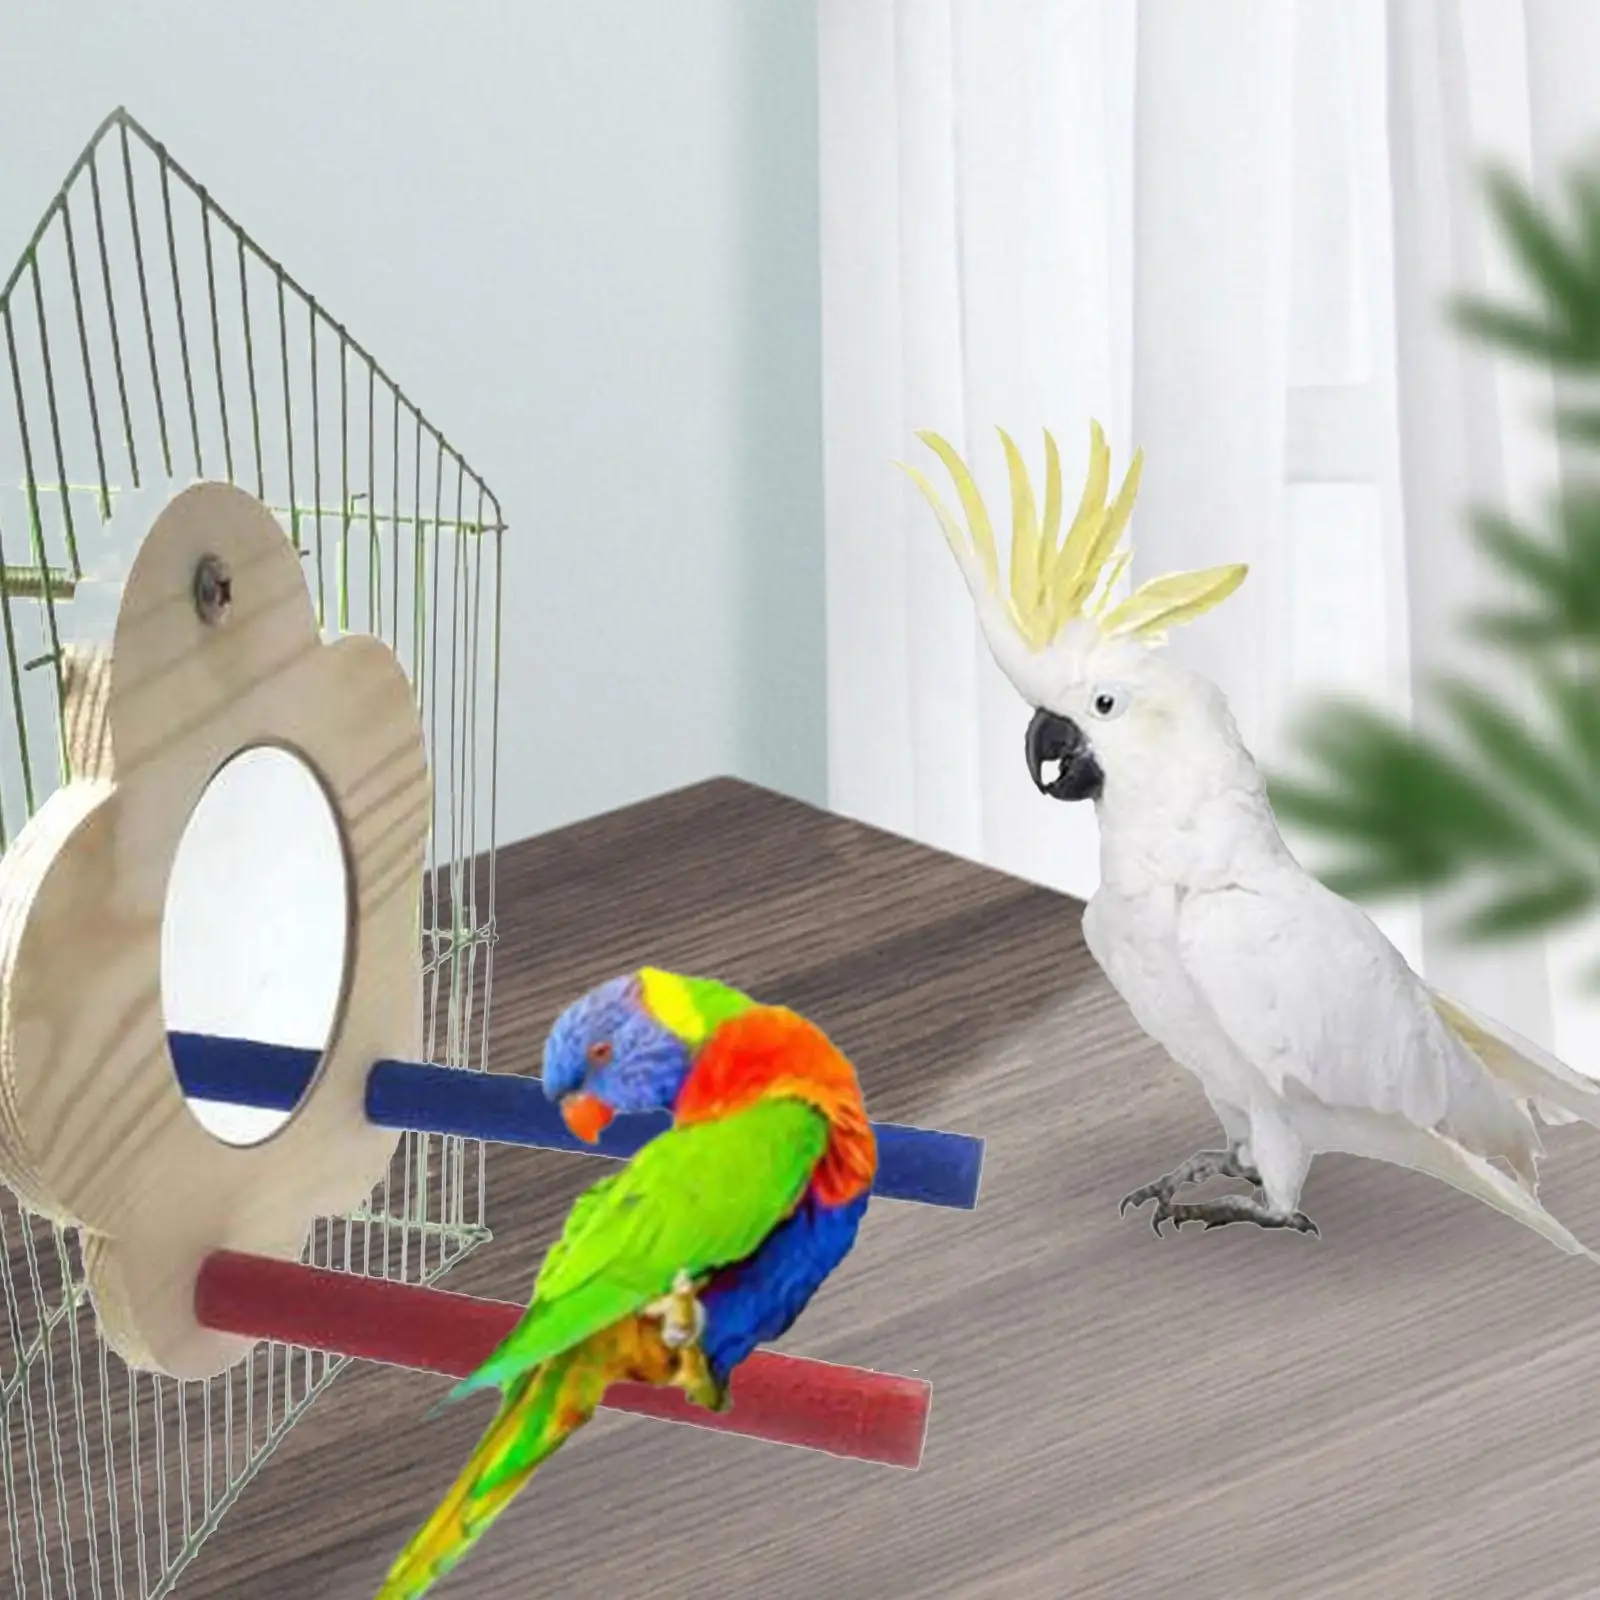 Parrot Mirror Perch for Bird Cage Playstand Bird Perch Stand Bird Stand Toy for Lovebirds Small Bird Finch Pet Supplies